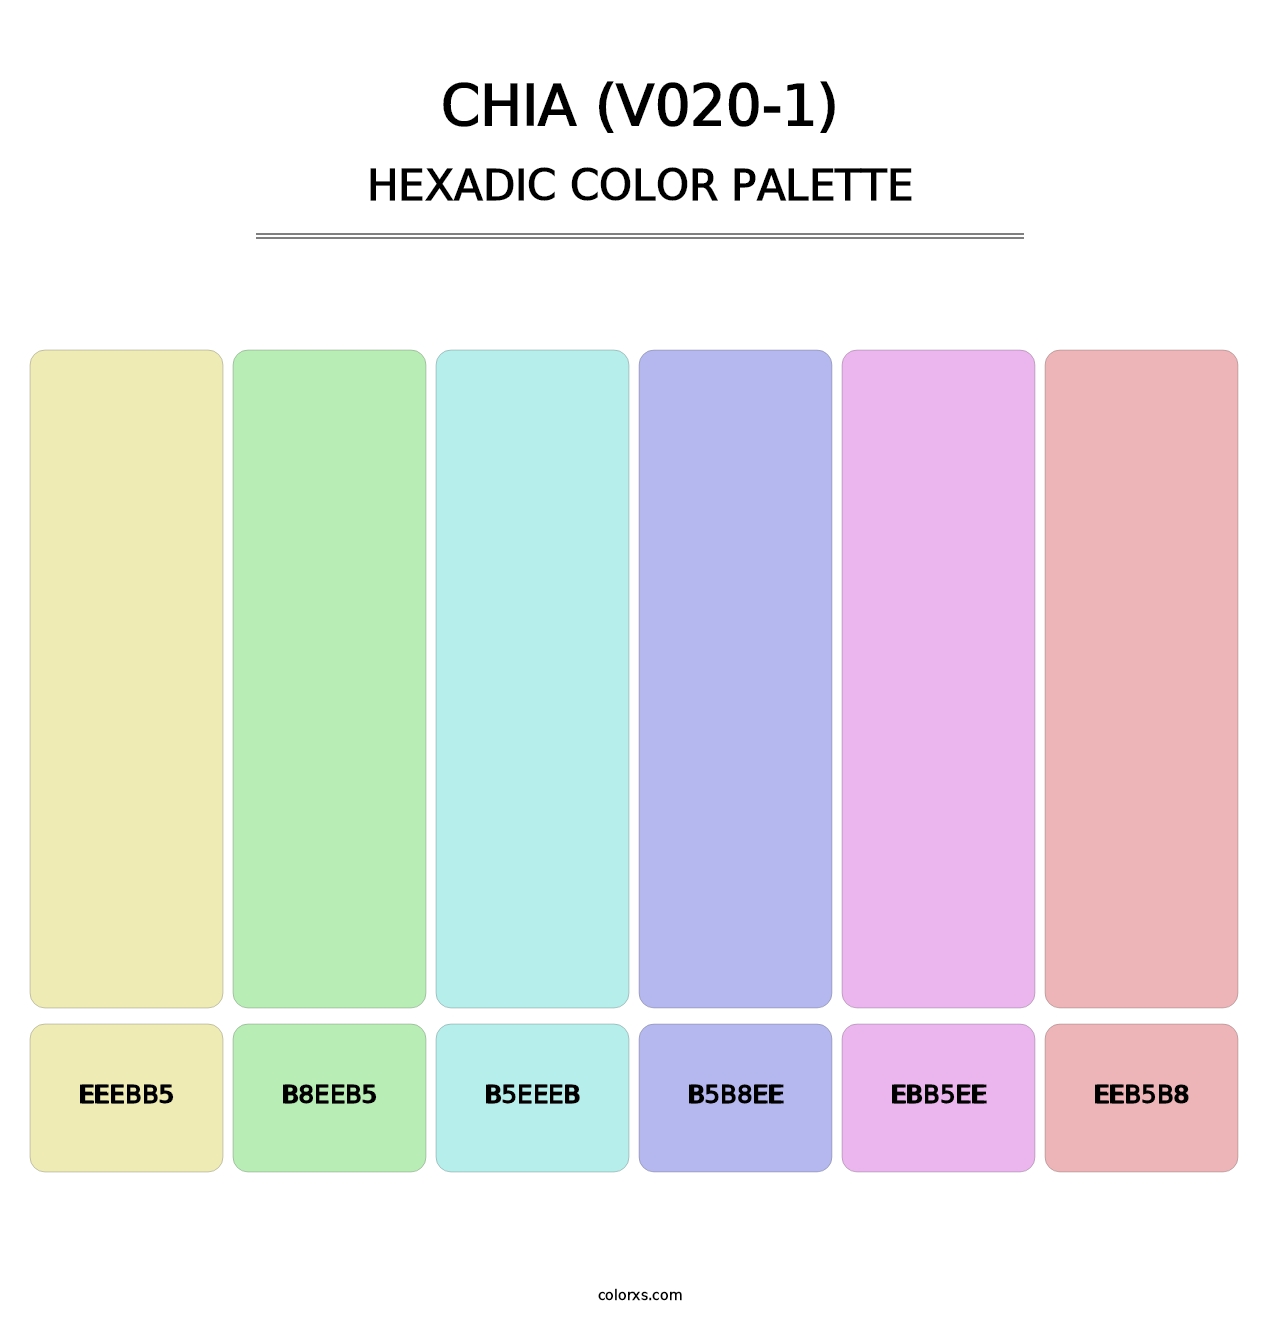 Chia (V020-1) - Hexadic Color Palette